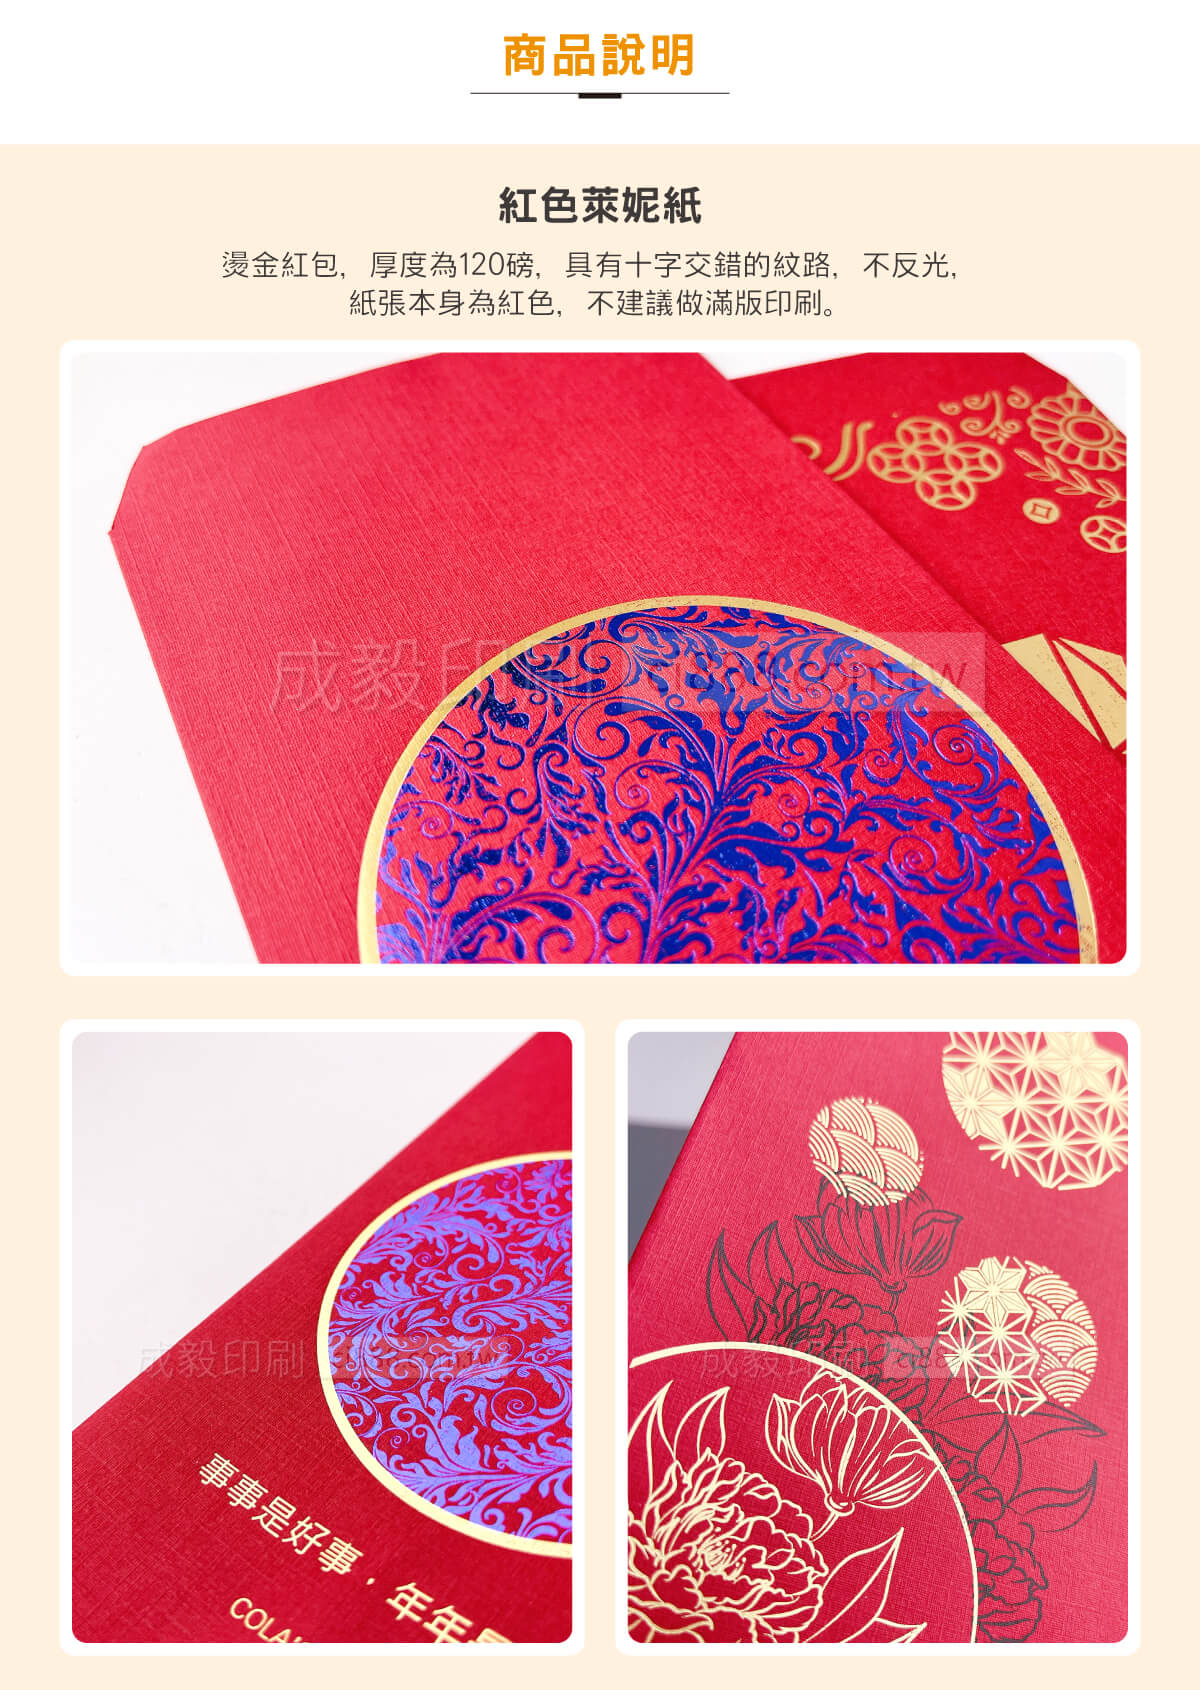 紅包袋 中式紅包 禮金袋 獎金袋 抽獎包 彩印紅包袋 客製化印刷 設計印刷 高雄印刷